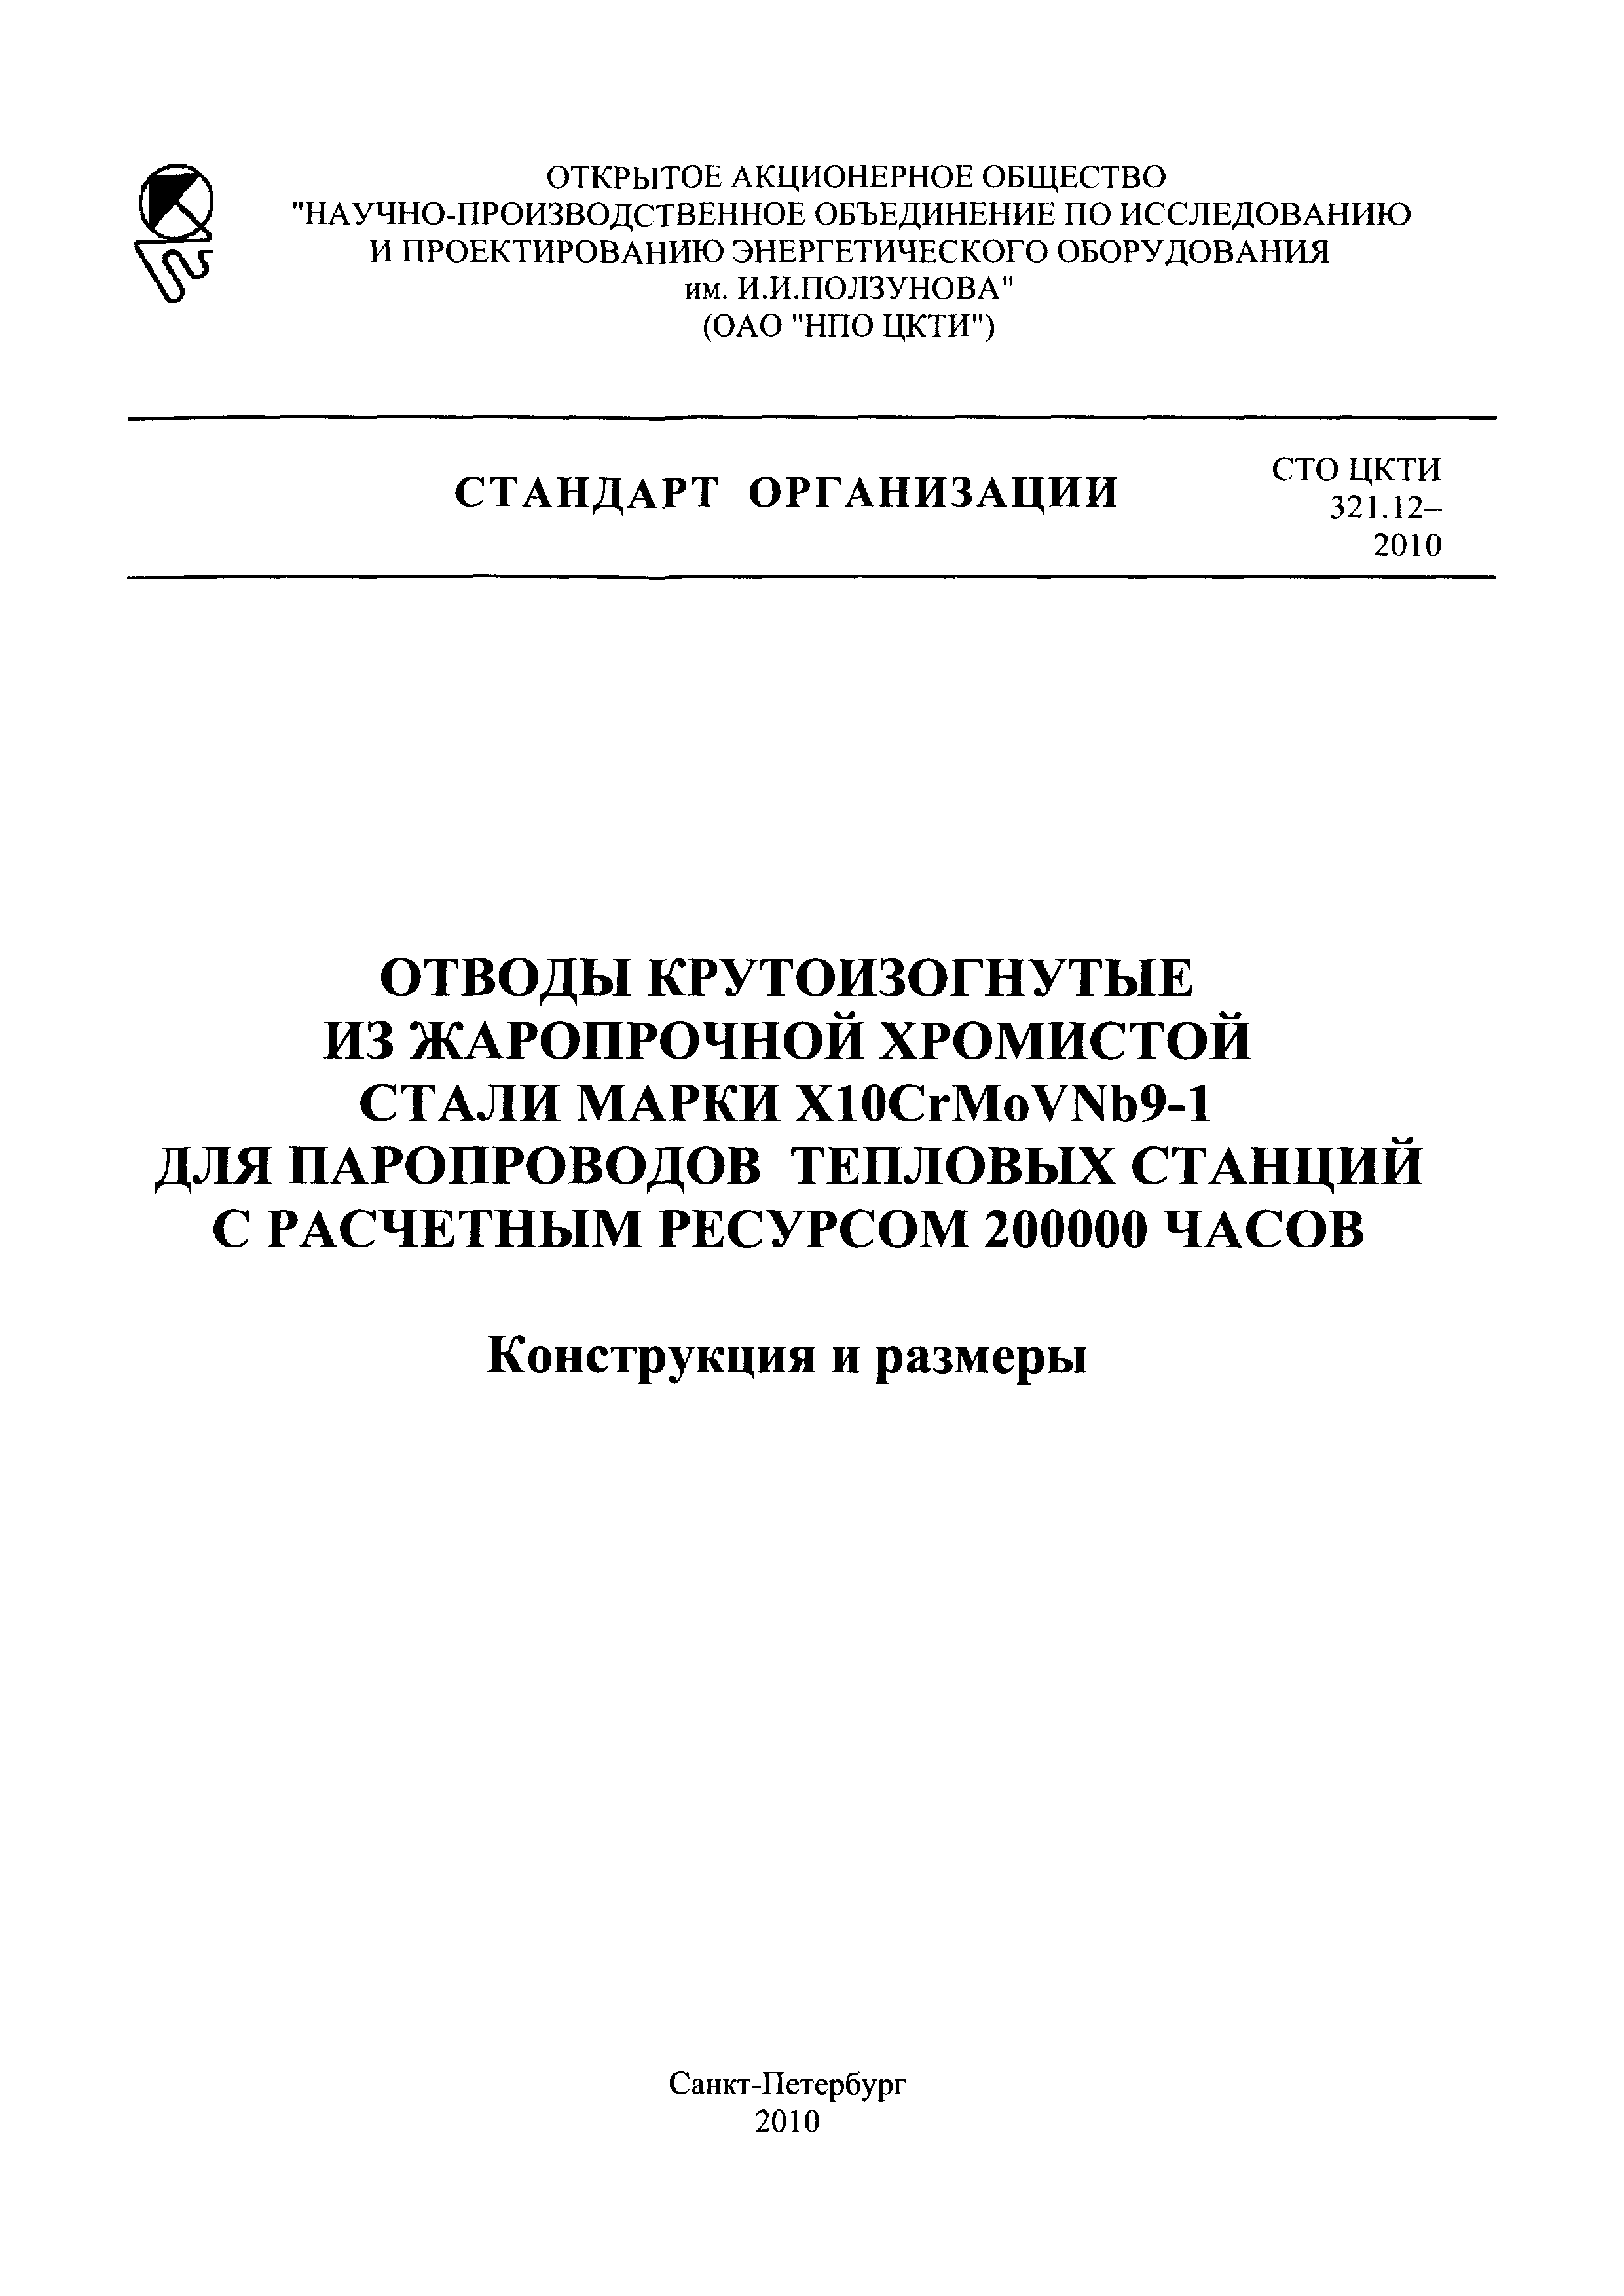 СТО ЦКТИ 321.12-2010